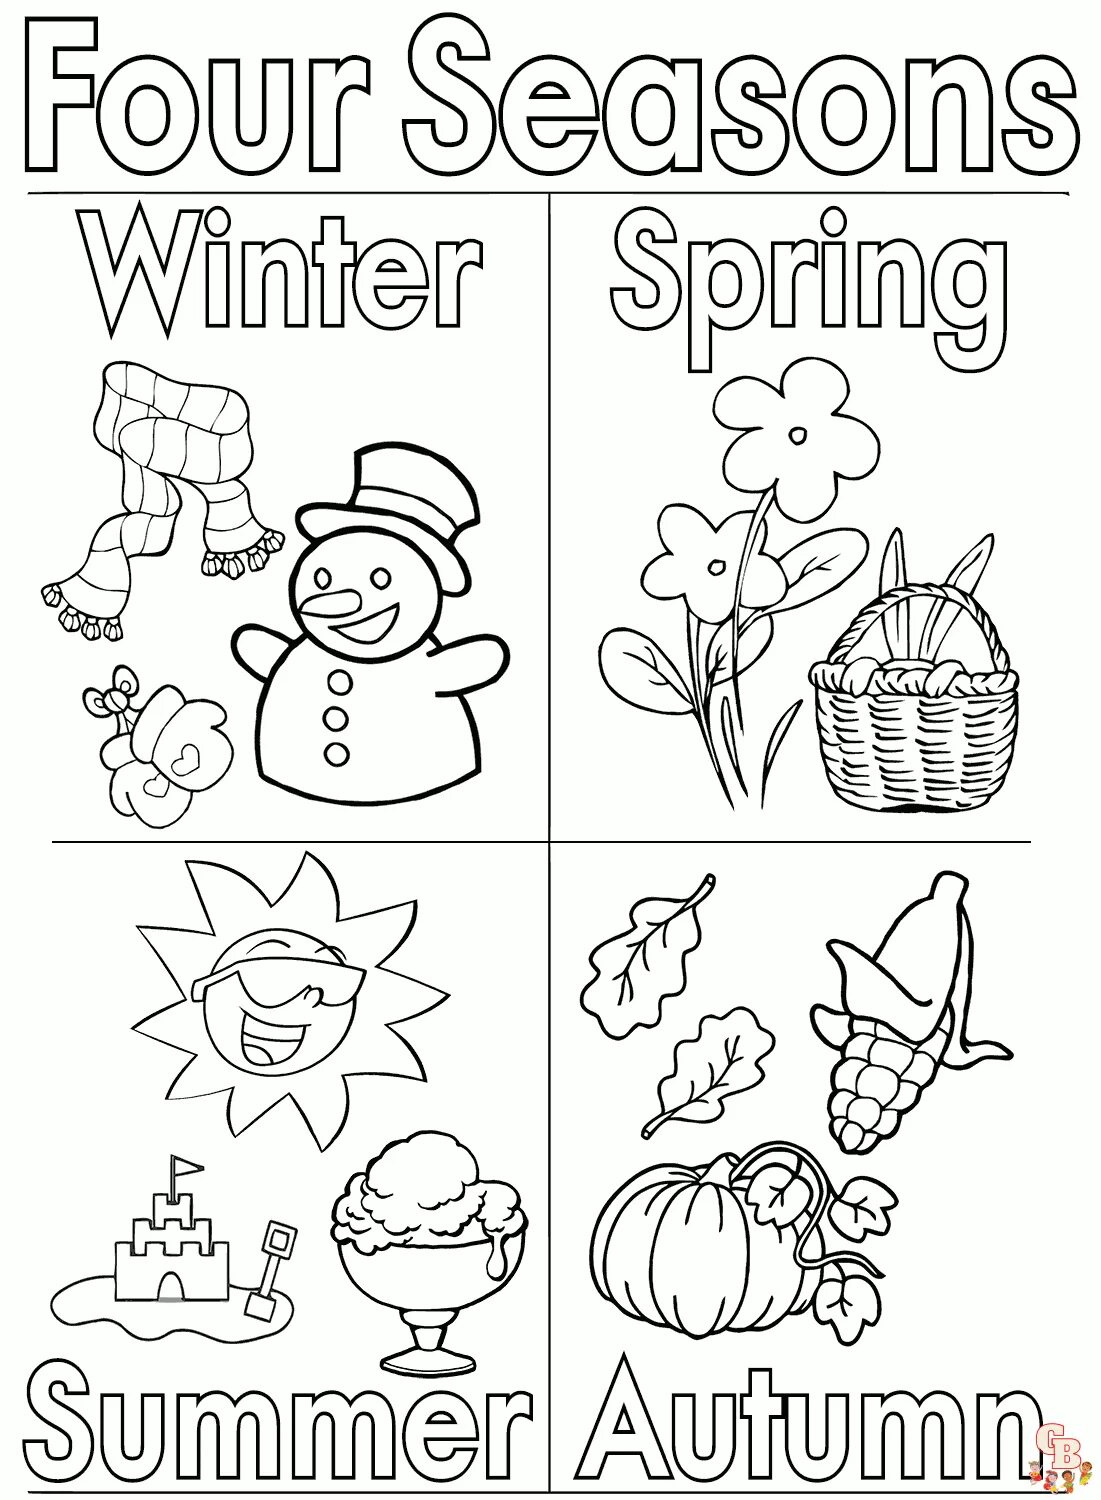 Seasons tasks. Seasons задания для детей. Времена года на английском раскраска. Seasons раскраска для детей. Английский для малышей времена года.